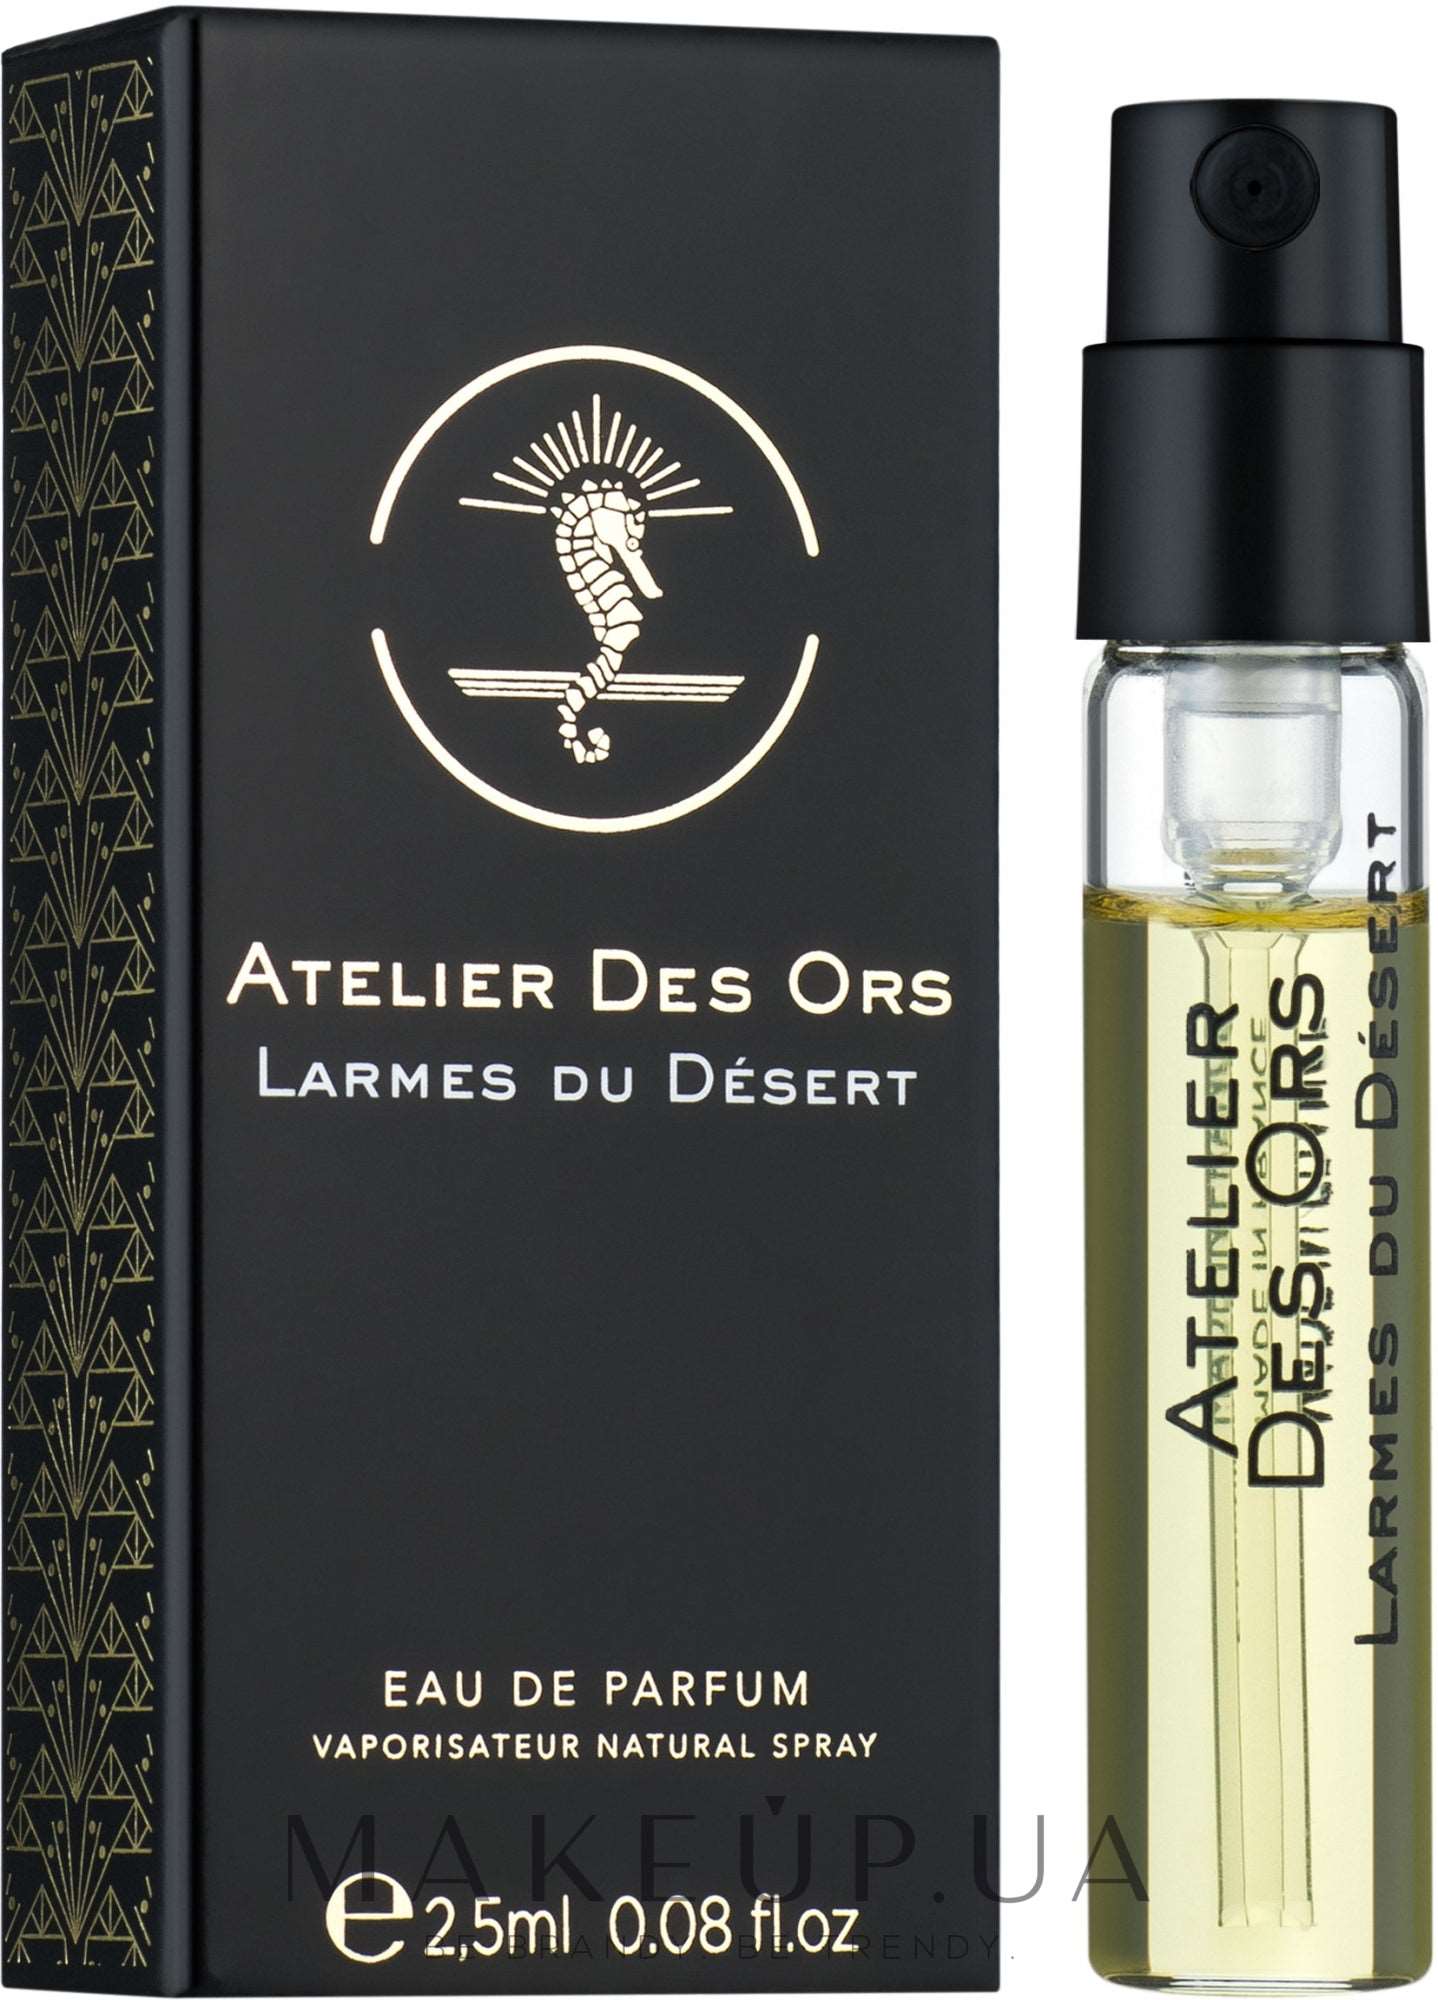 Atelier Des Ors Larmes du Desert 2.5 ml 0.08 fl. oz. Ametlikud parfüümi näidised